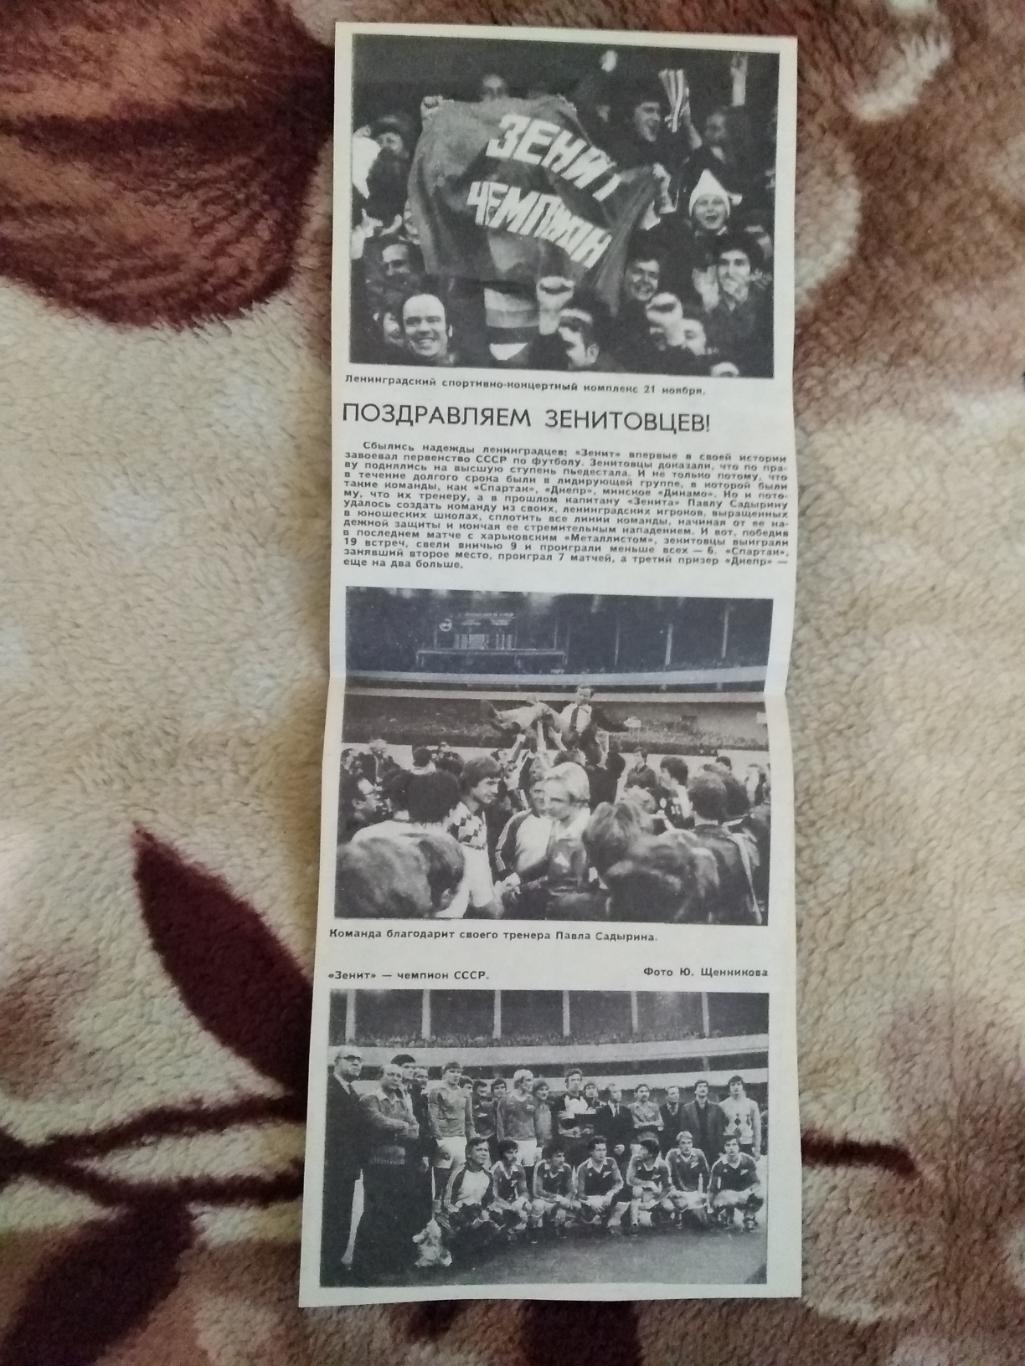 Статья.Фото.Футбол.Зенит (Ленинград) - чемпион СССР 1984.Журнал Огонек.